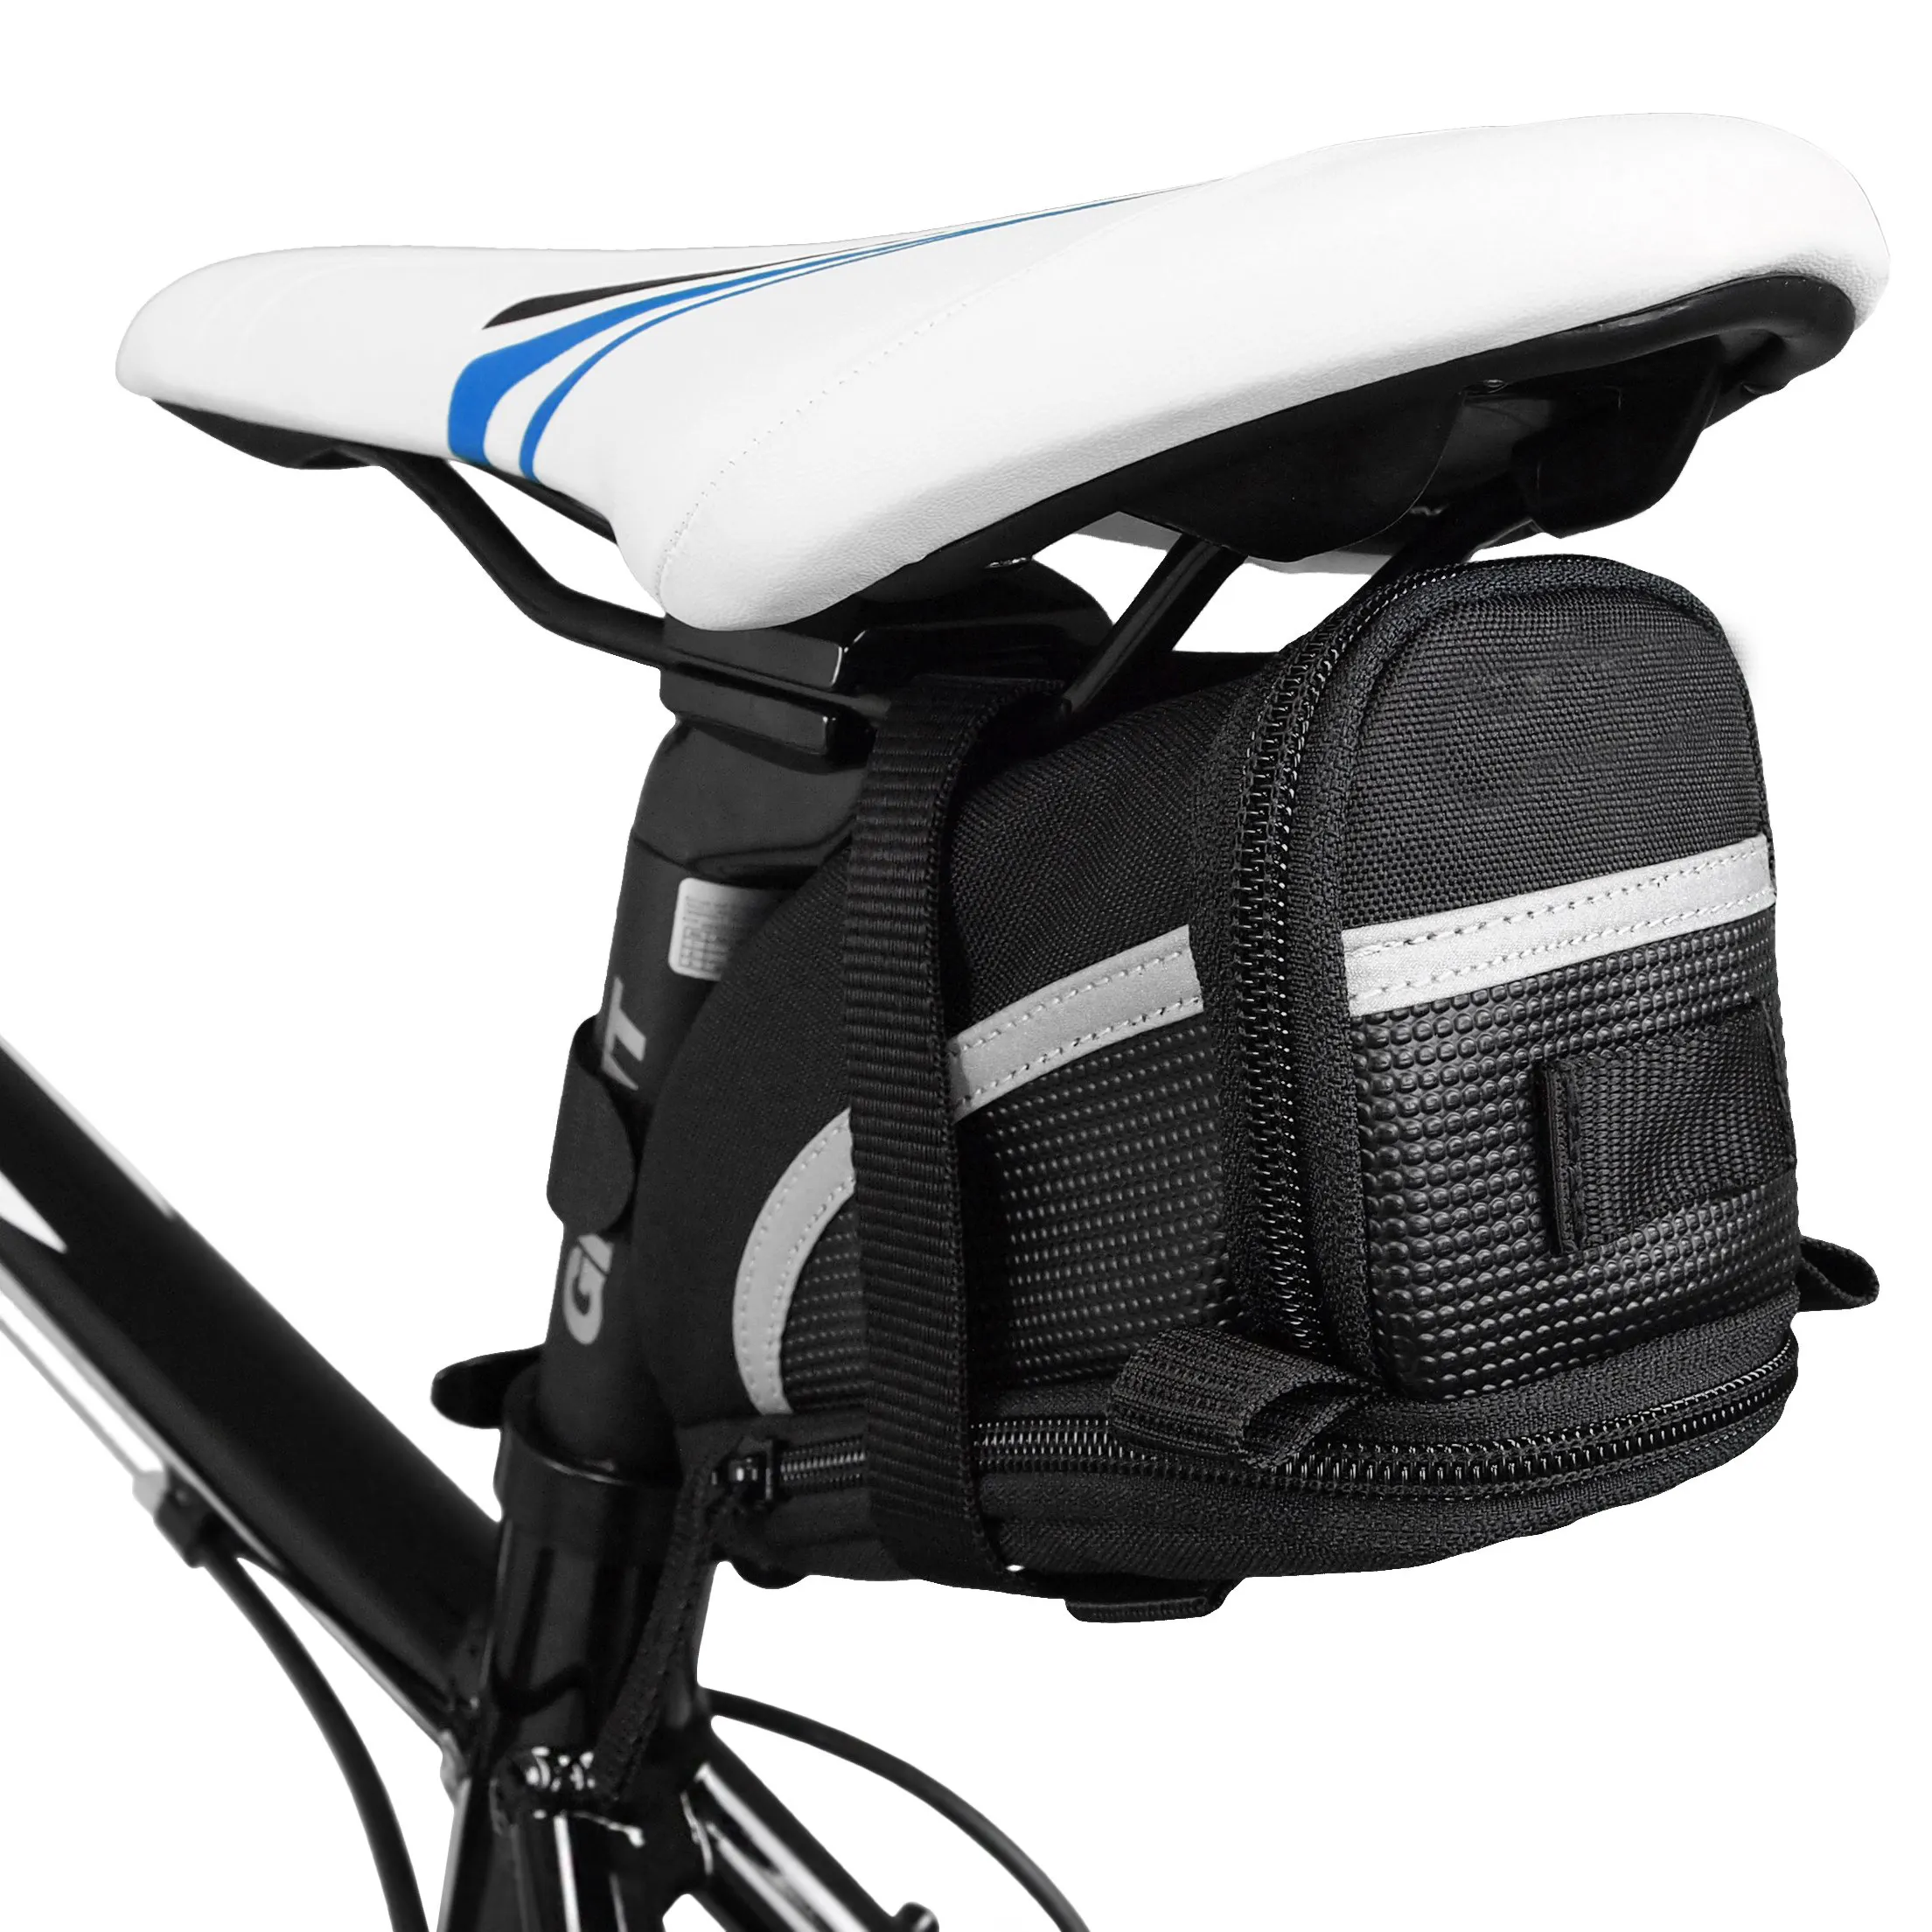 Tas sadel tali untuk sepeda, tas selempang sepeda dengan ukuran sempurna, tas reflektif untuk keselamatan, tas kursi sepeda